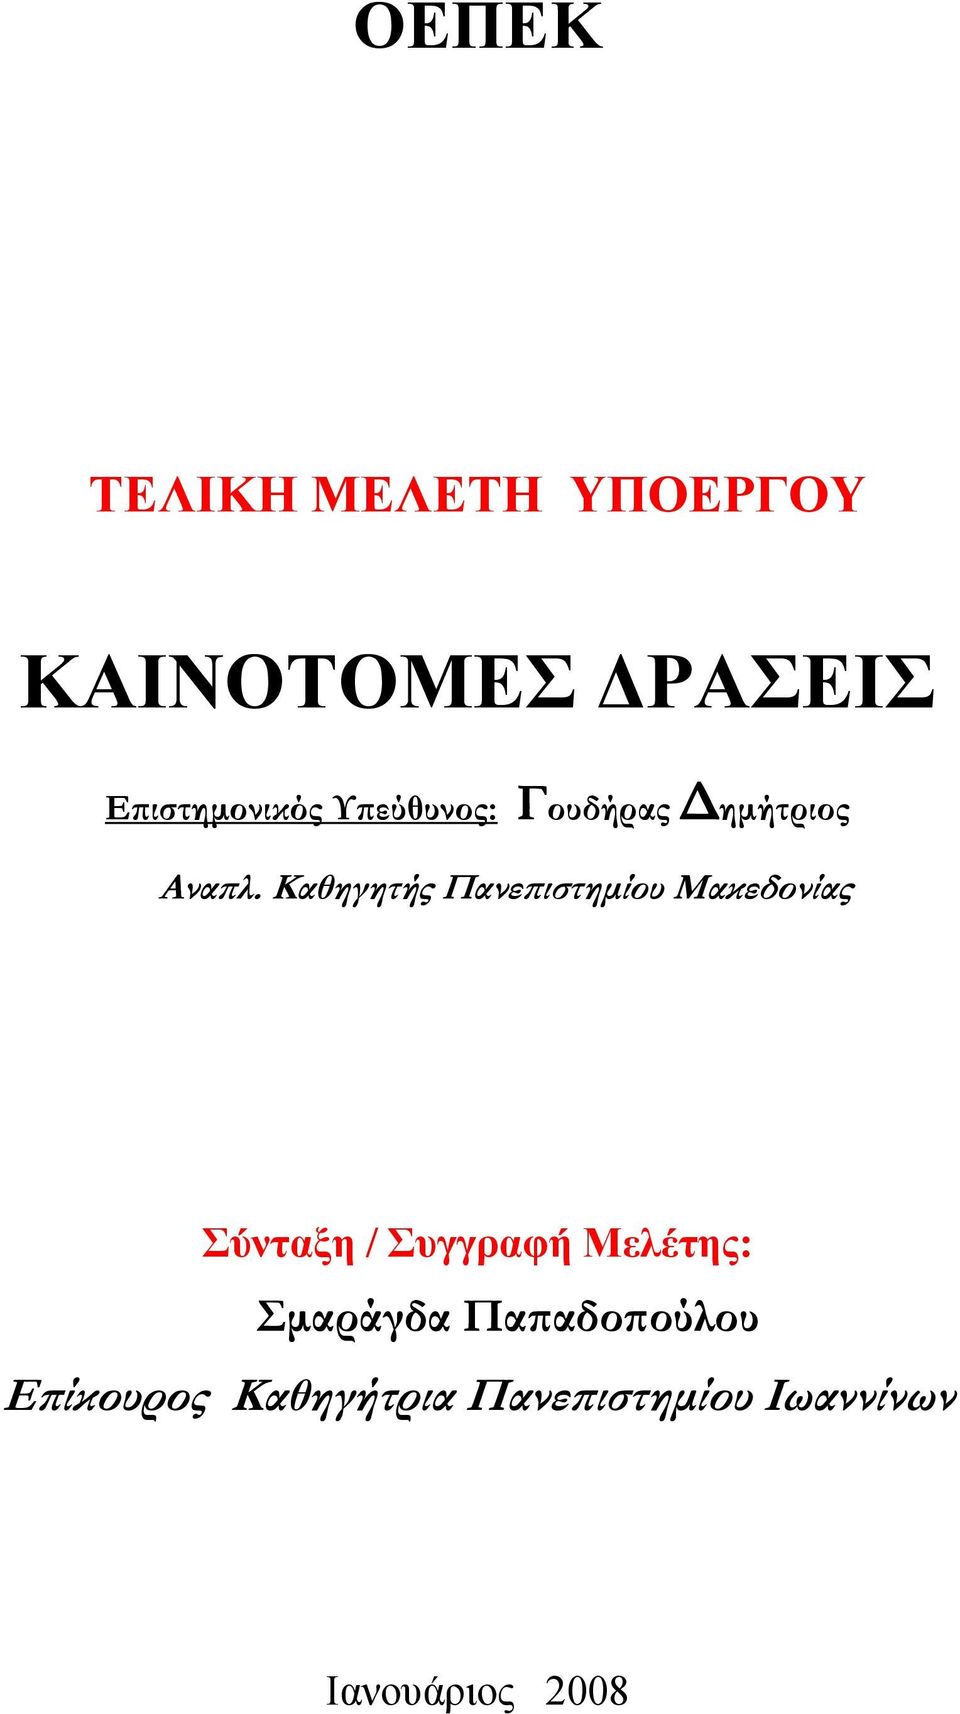 Καθηγητής Πανεπιστημίου Μακεδονίας Σύνταξη / Συγγραφή